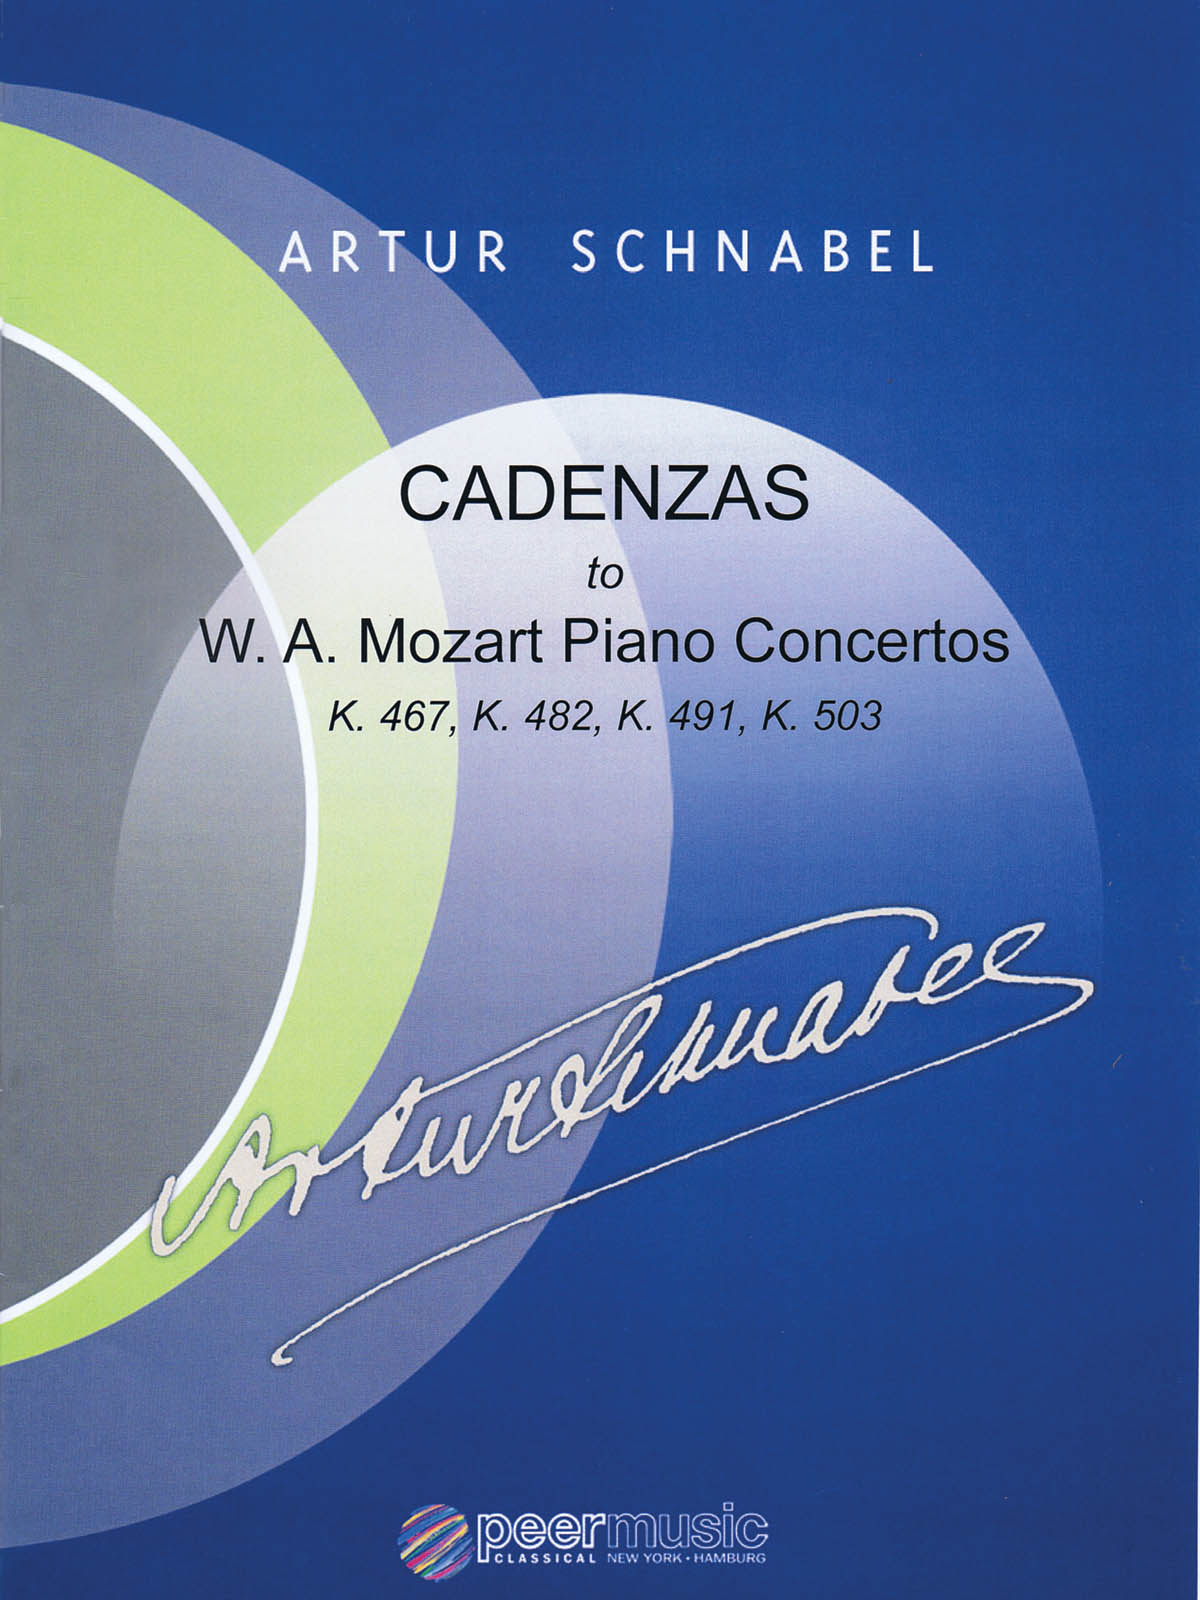 Cadenzas to Mozart Piano Concertos